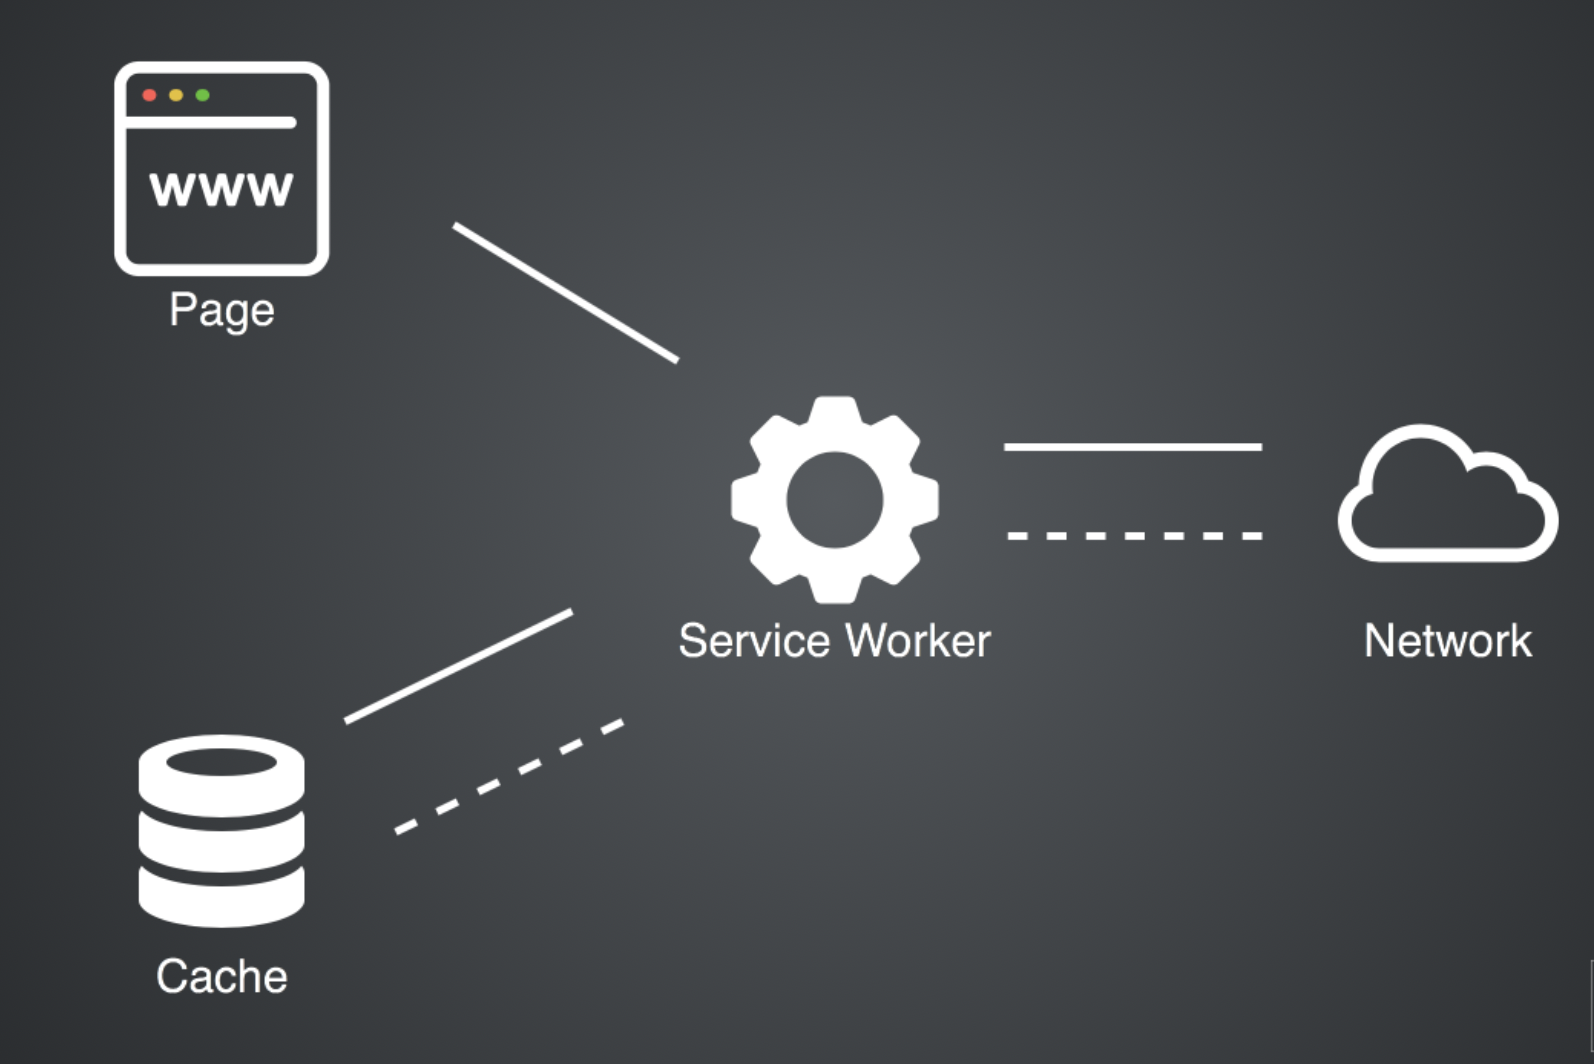 Service Worker workflow